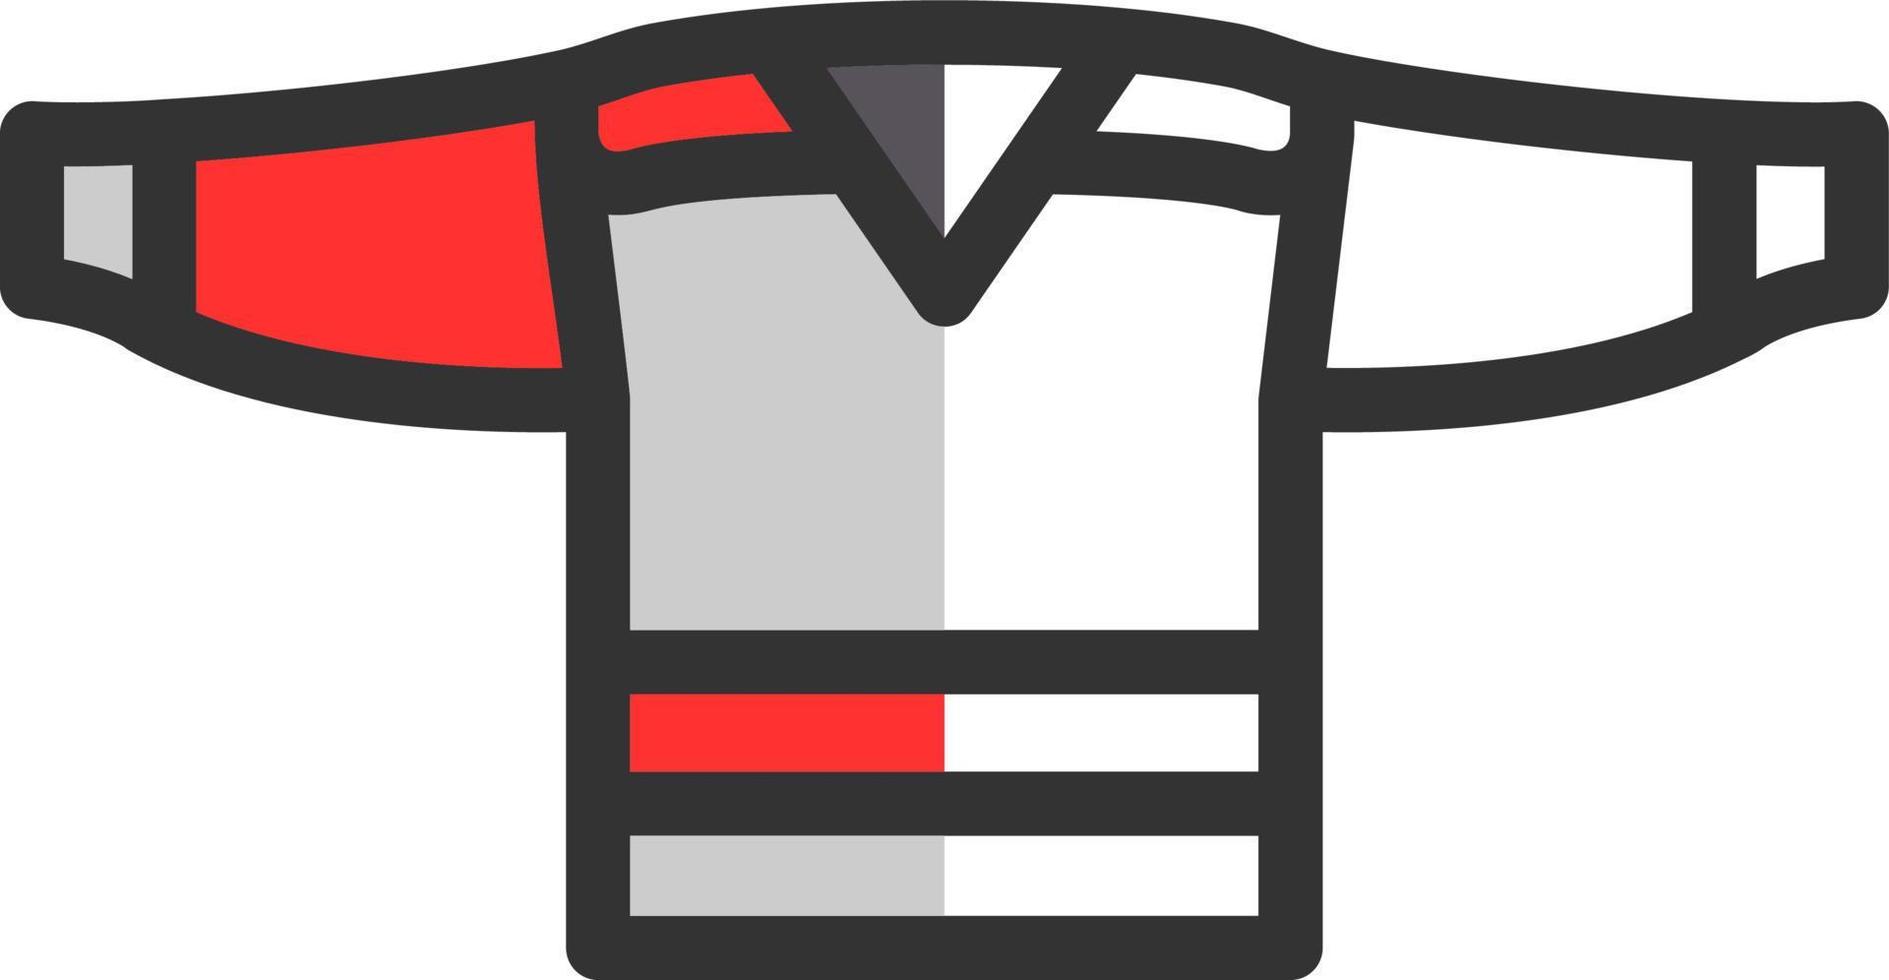 Hockey Jersey Vector Icon Design